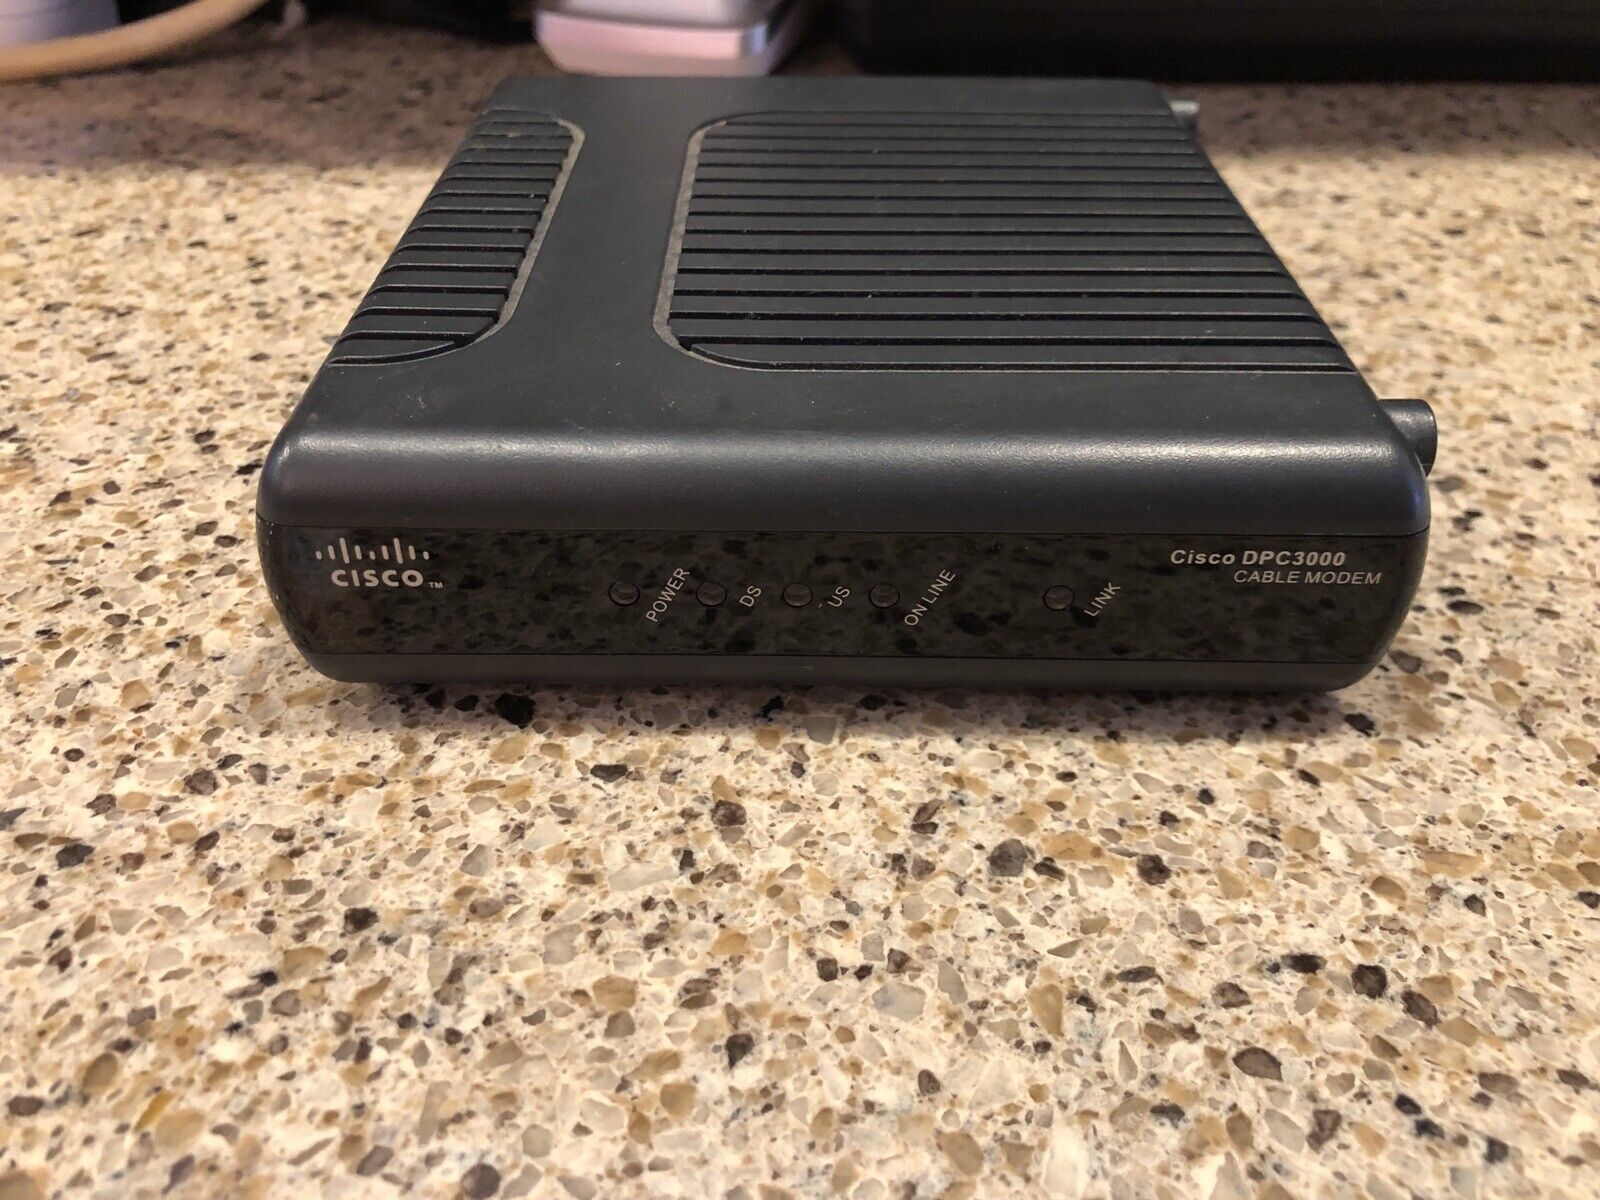 Cisco DPC3000 DOCSIS 3.0 Cable Modem (Not compatible with Comcast)